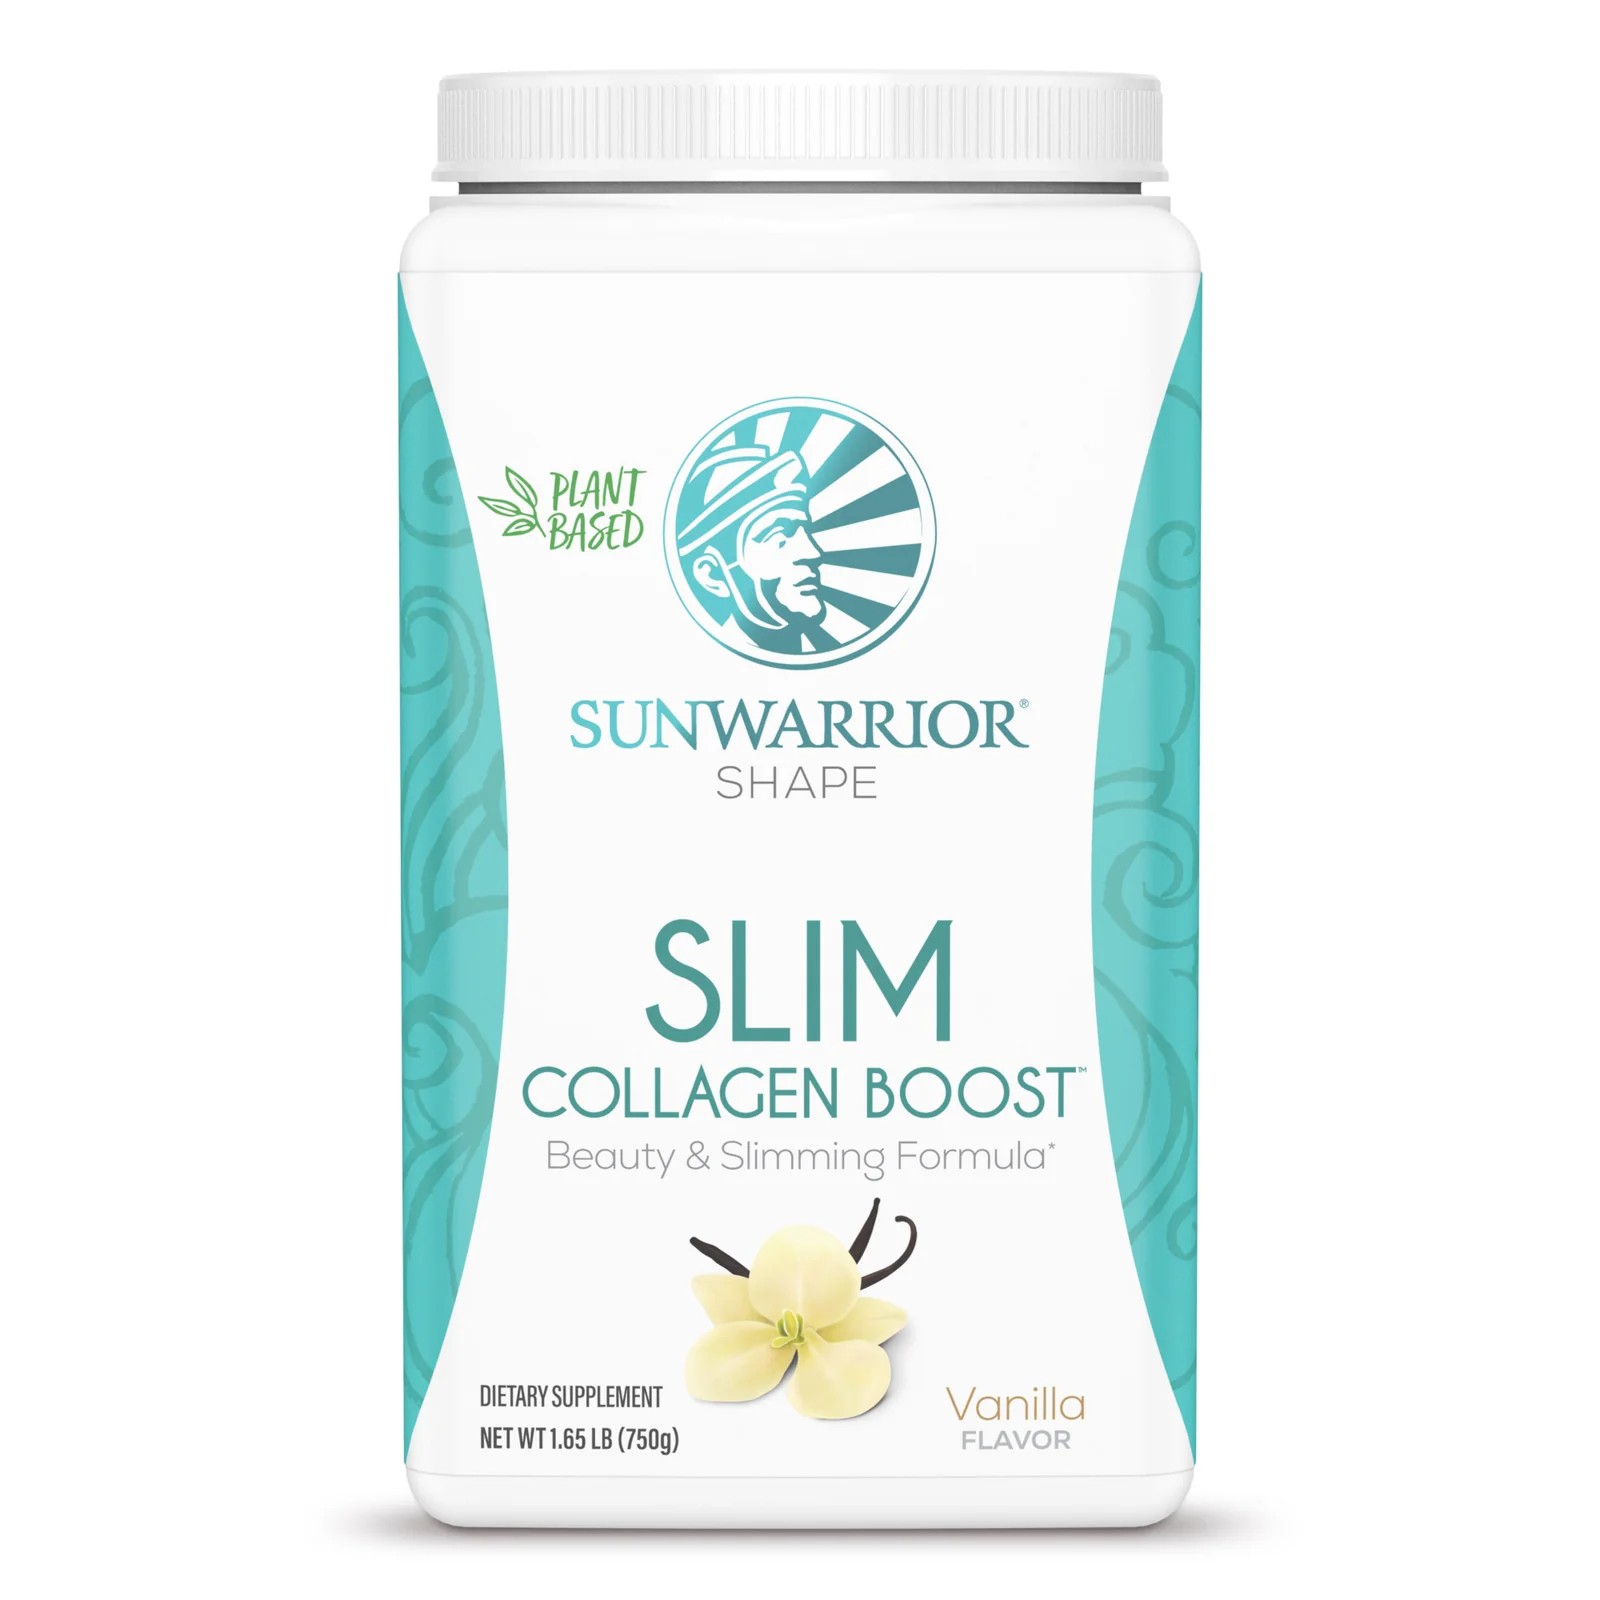 Sunwarrior Slim Collagen Boost 15